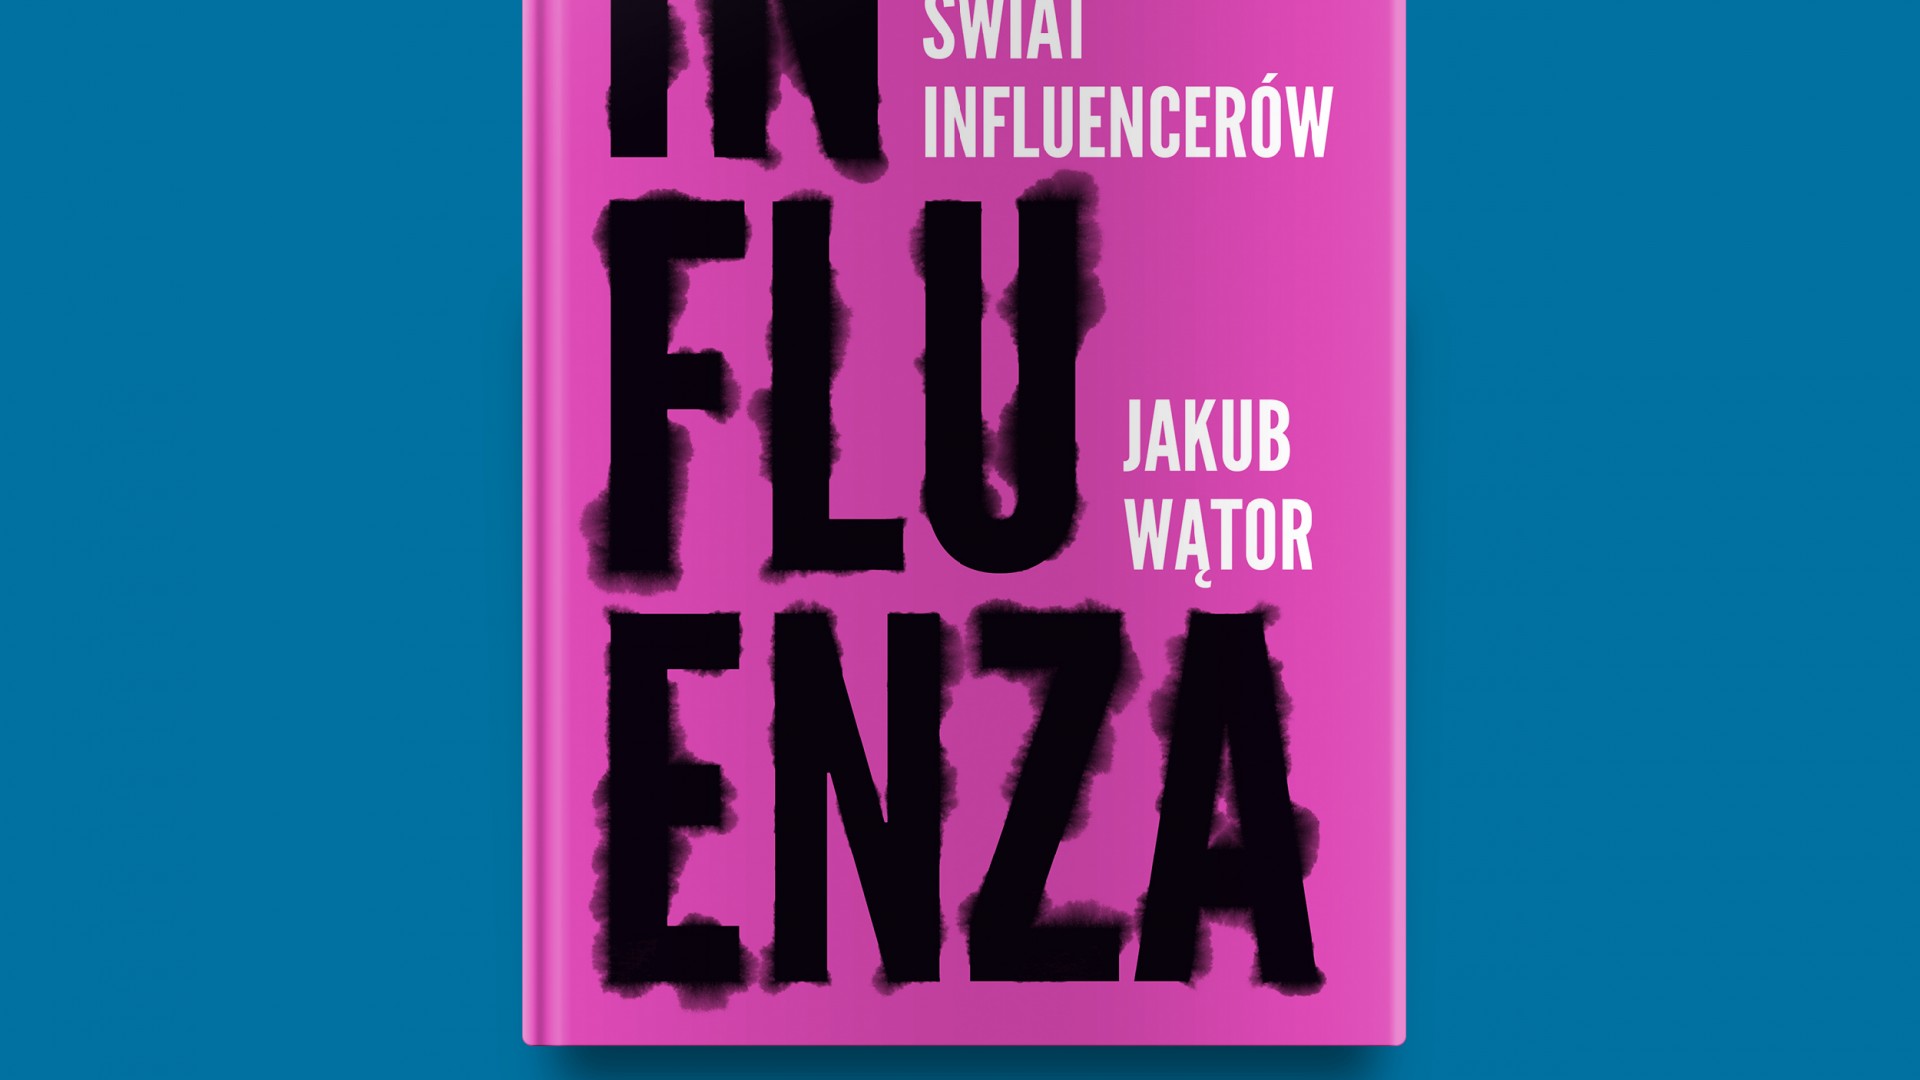 Jakub Wątor prześwietla branżę influencerską w najnowszej książce „Influenza. Mroczny świat influencerów”